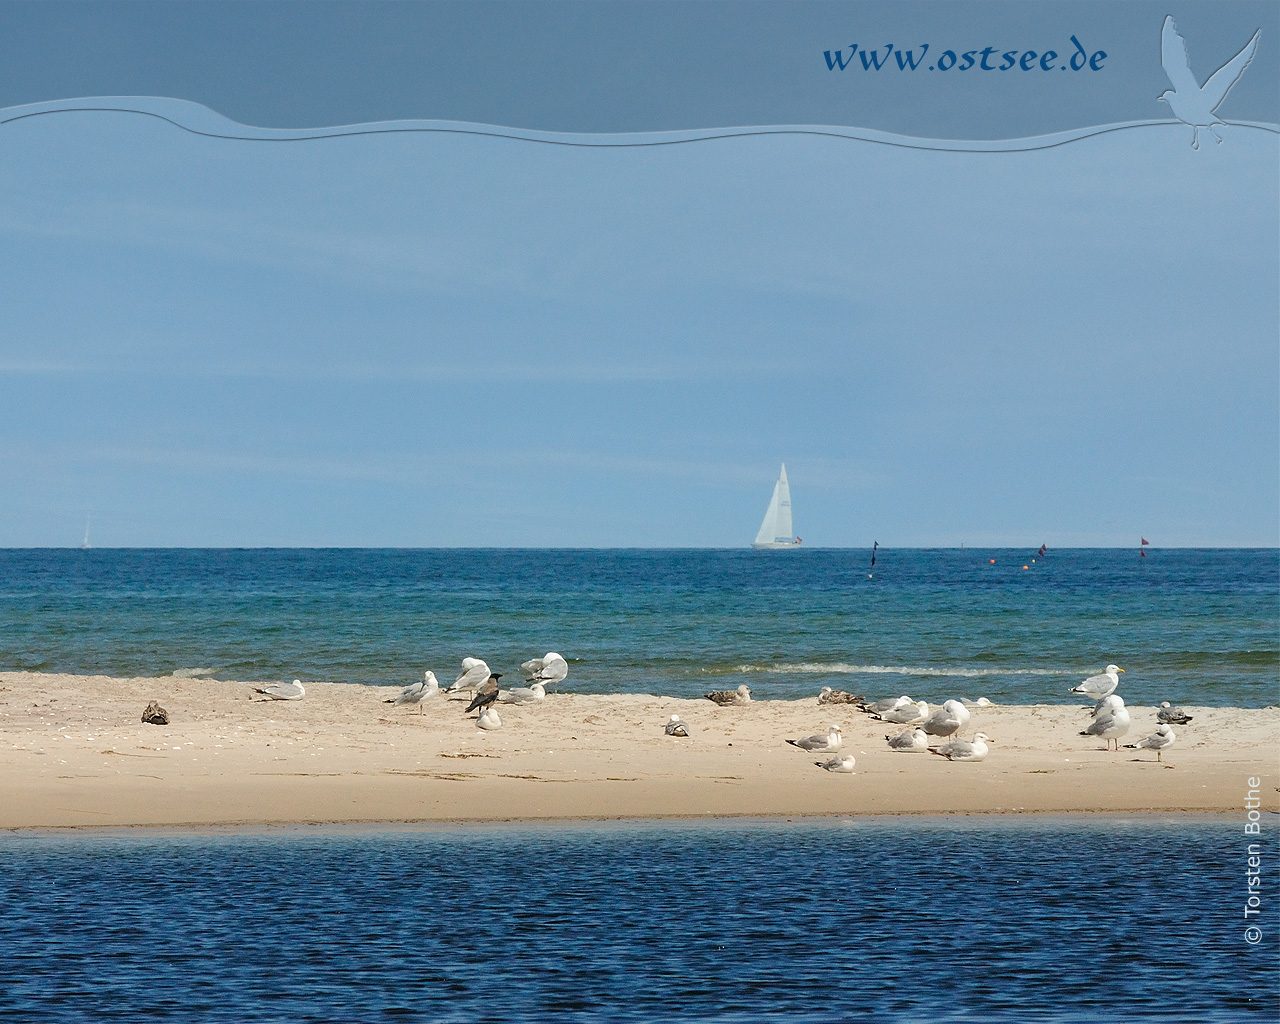 Hintergrundbild: Möwen an der Ostsee